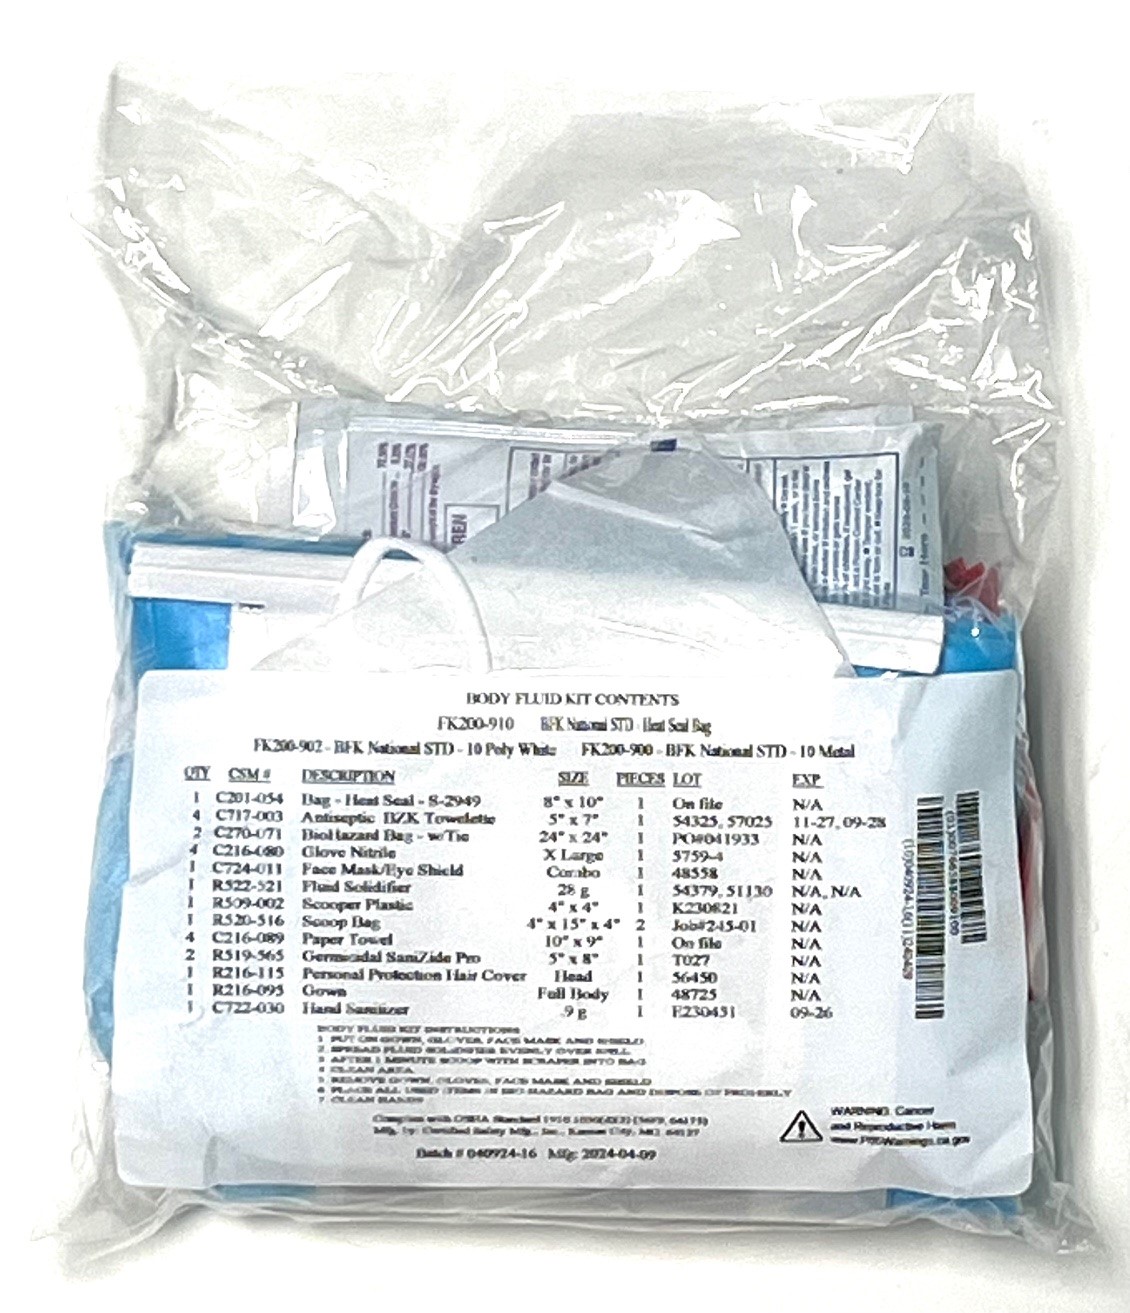 National Standard Body Fluid Kit, REFILL 